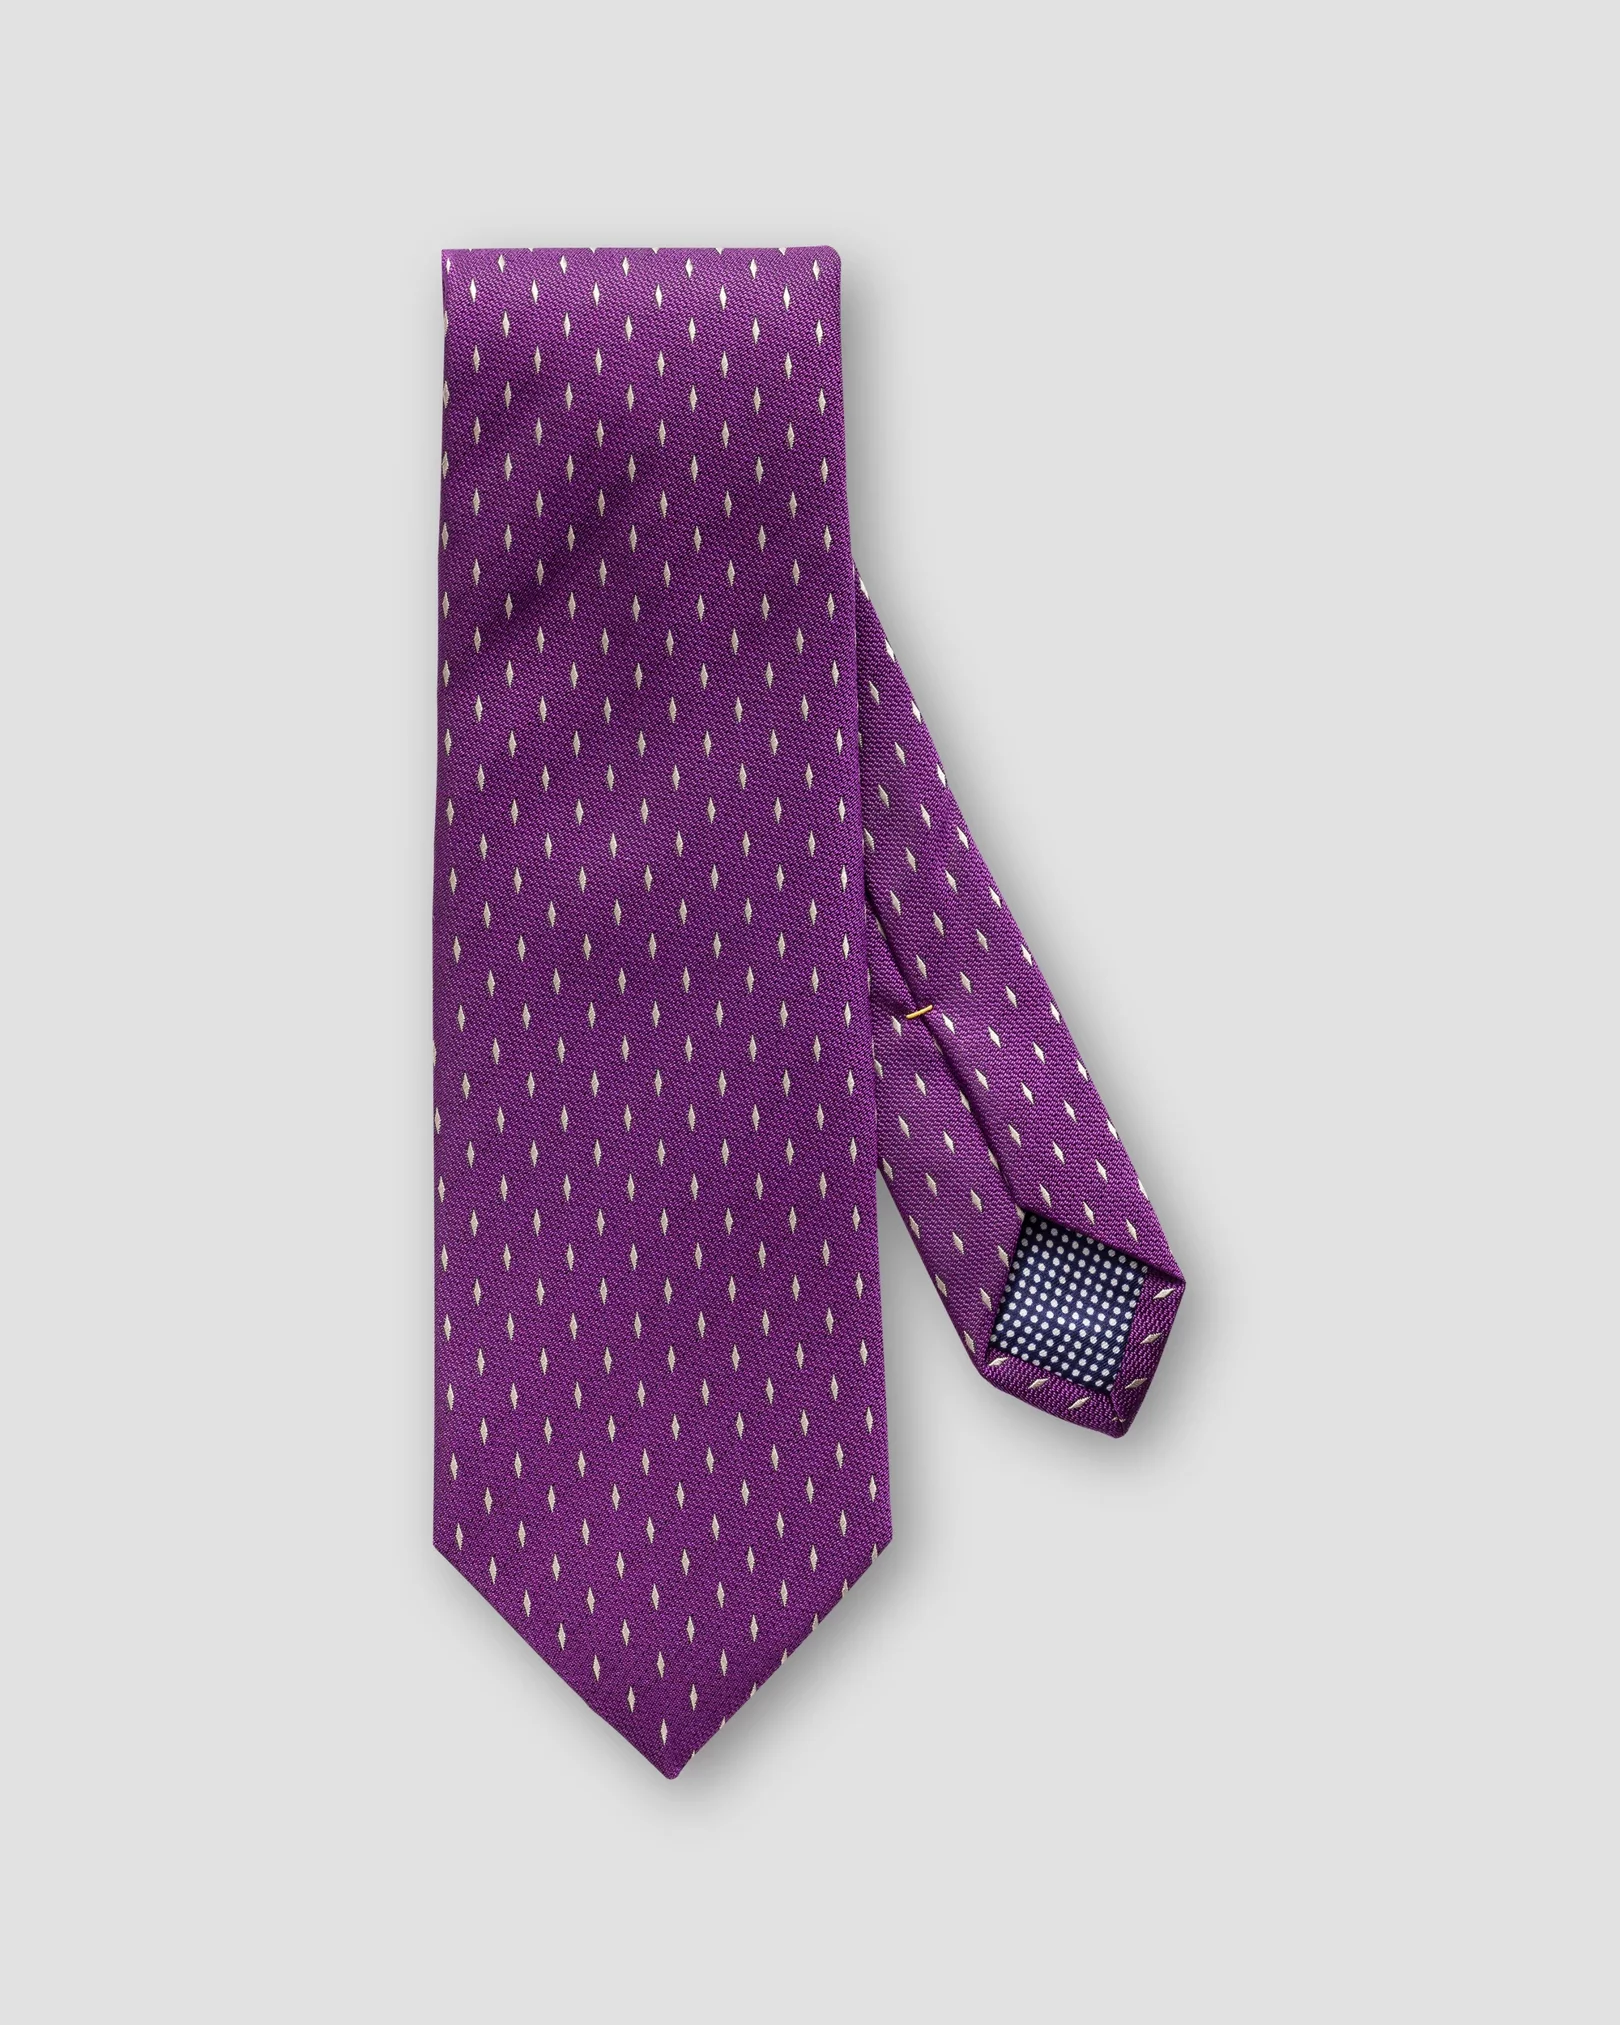 Eton - dark purple tie